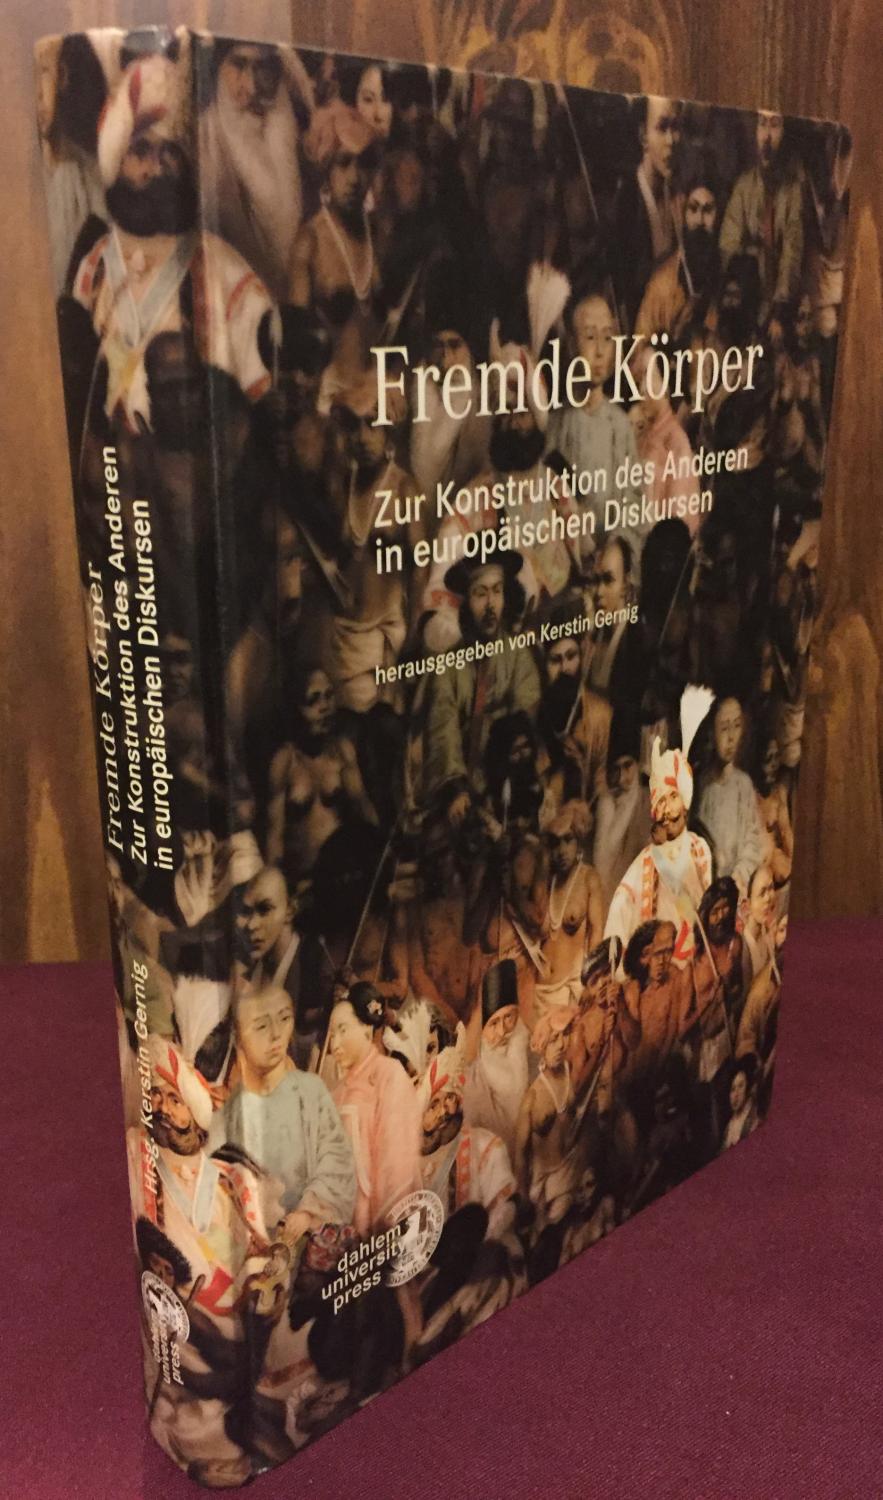 Fremde Körper: Zur Konstruktion des Anderen in europäischen Diskursen (Livre en allemand) - Kerstin Gernig (Editor)